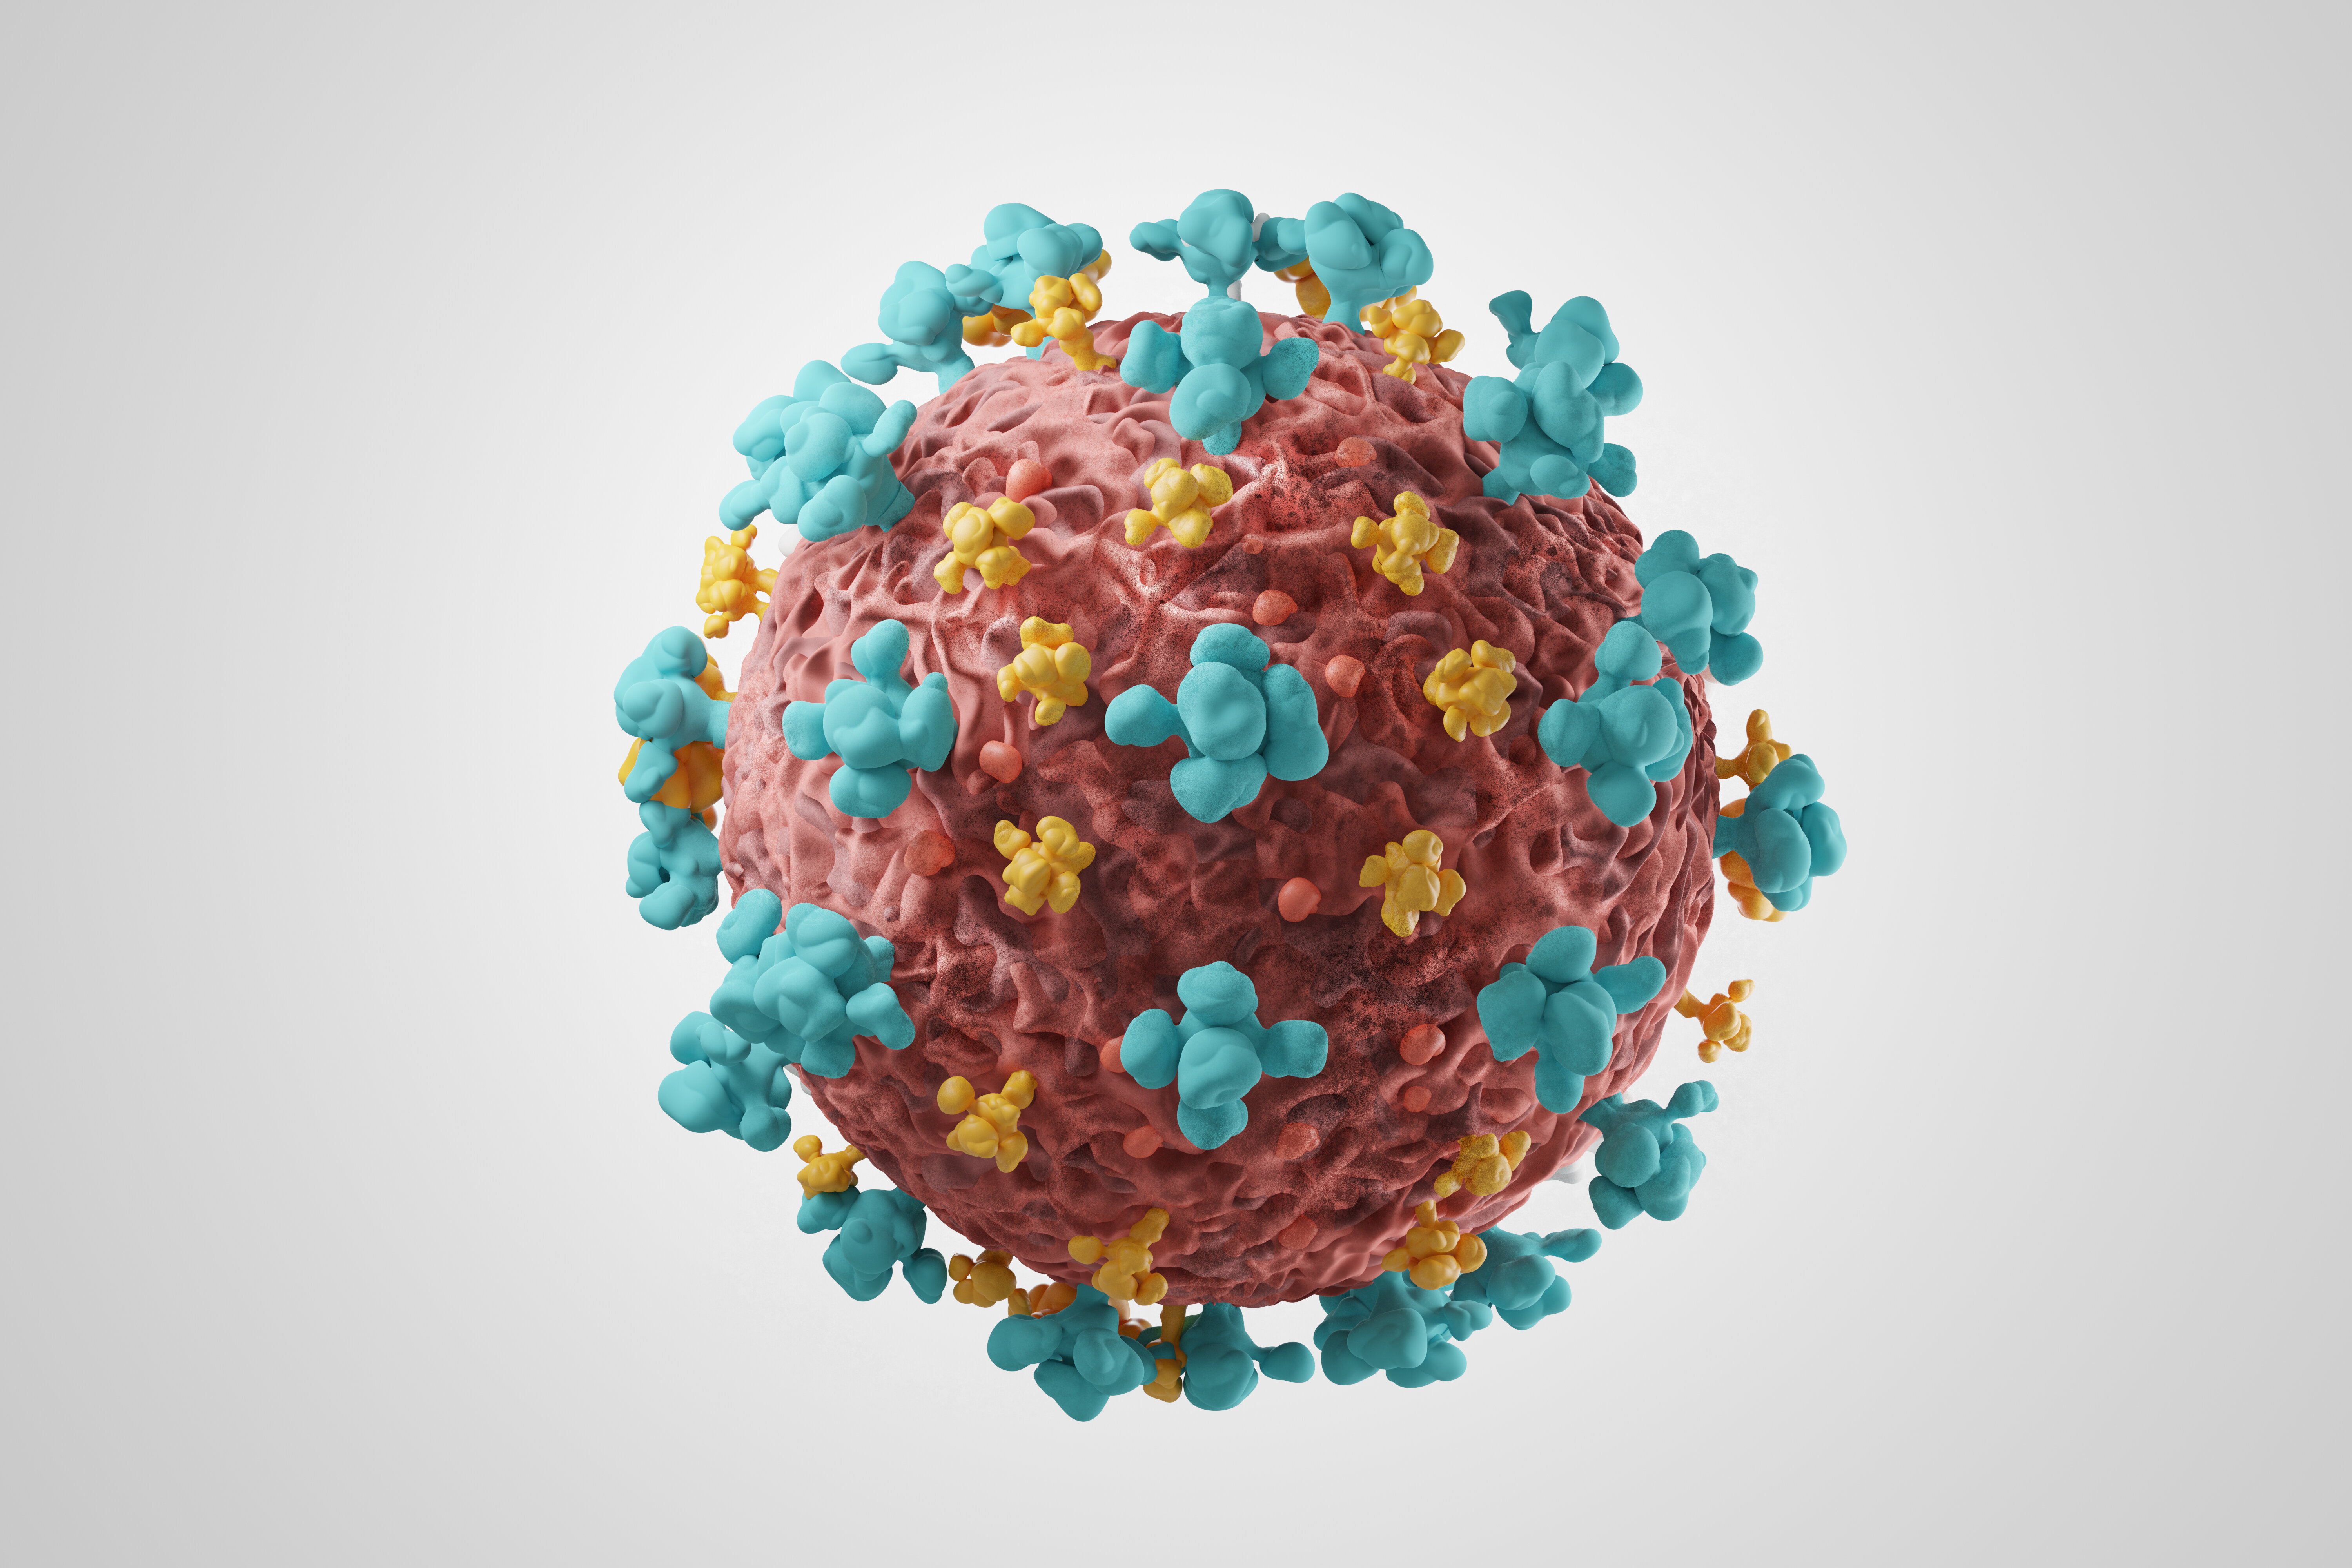 Variants du coronavirus: ce que l'on sait désormais et ce que l'on ignore encore